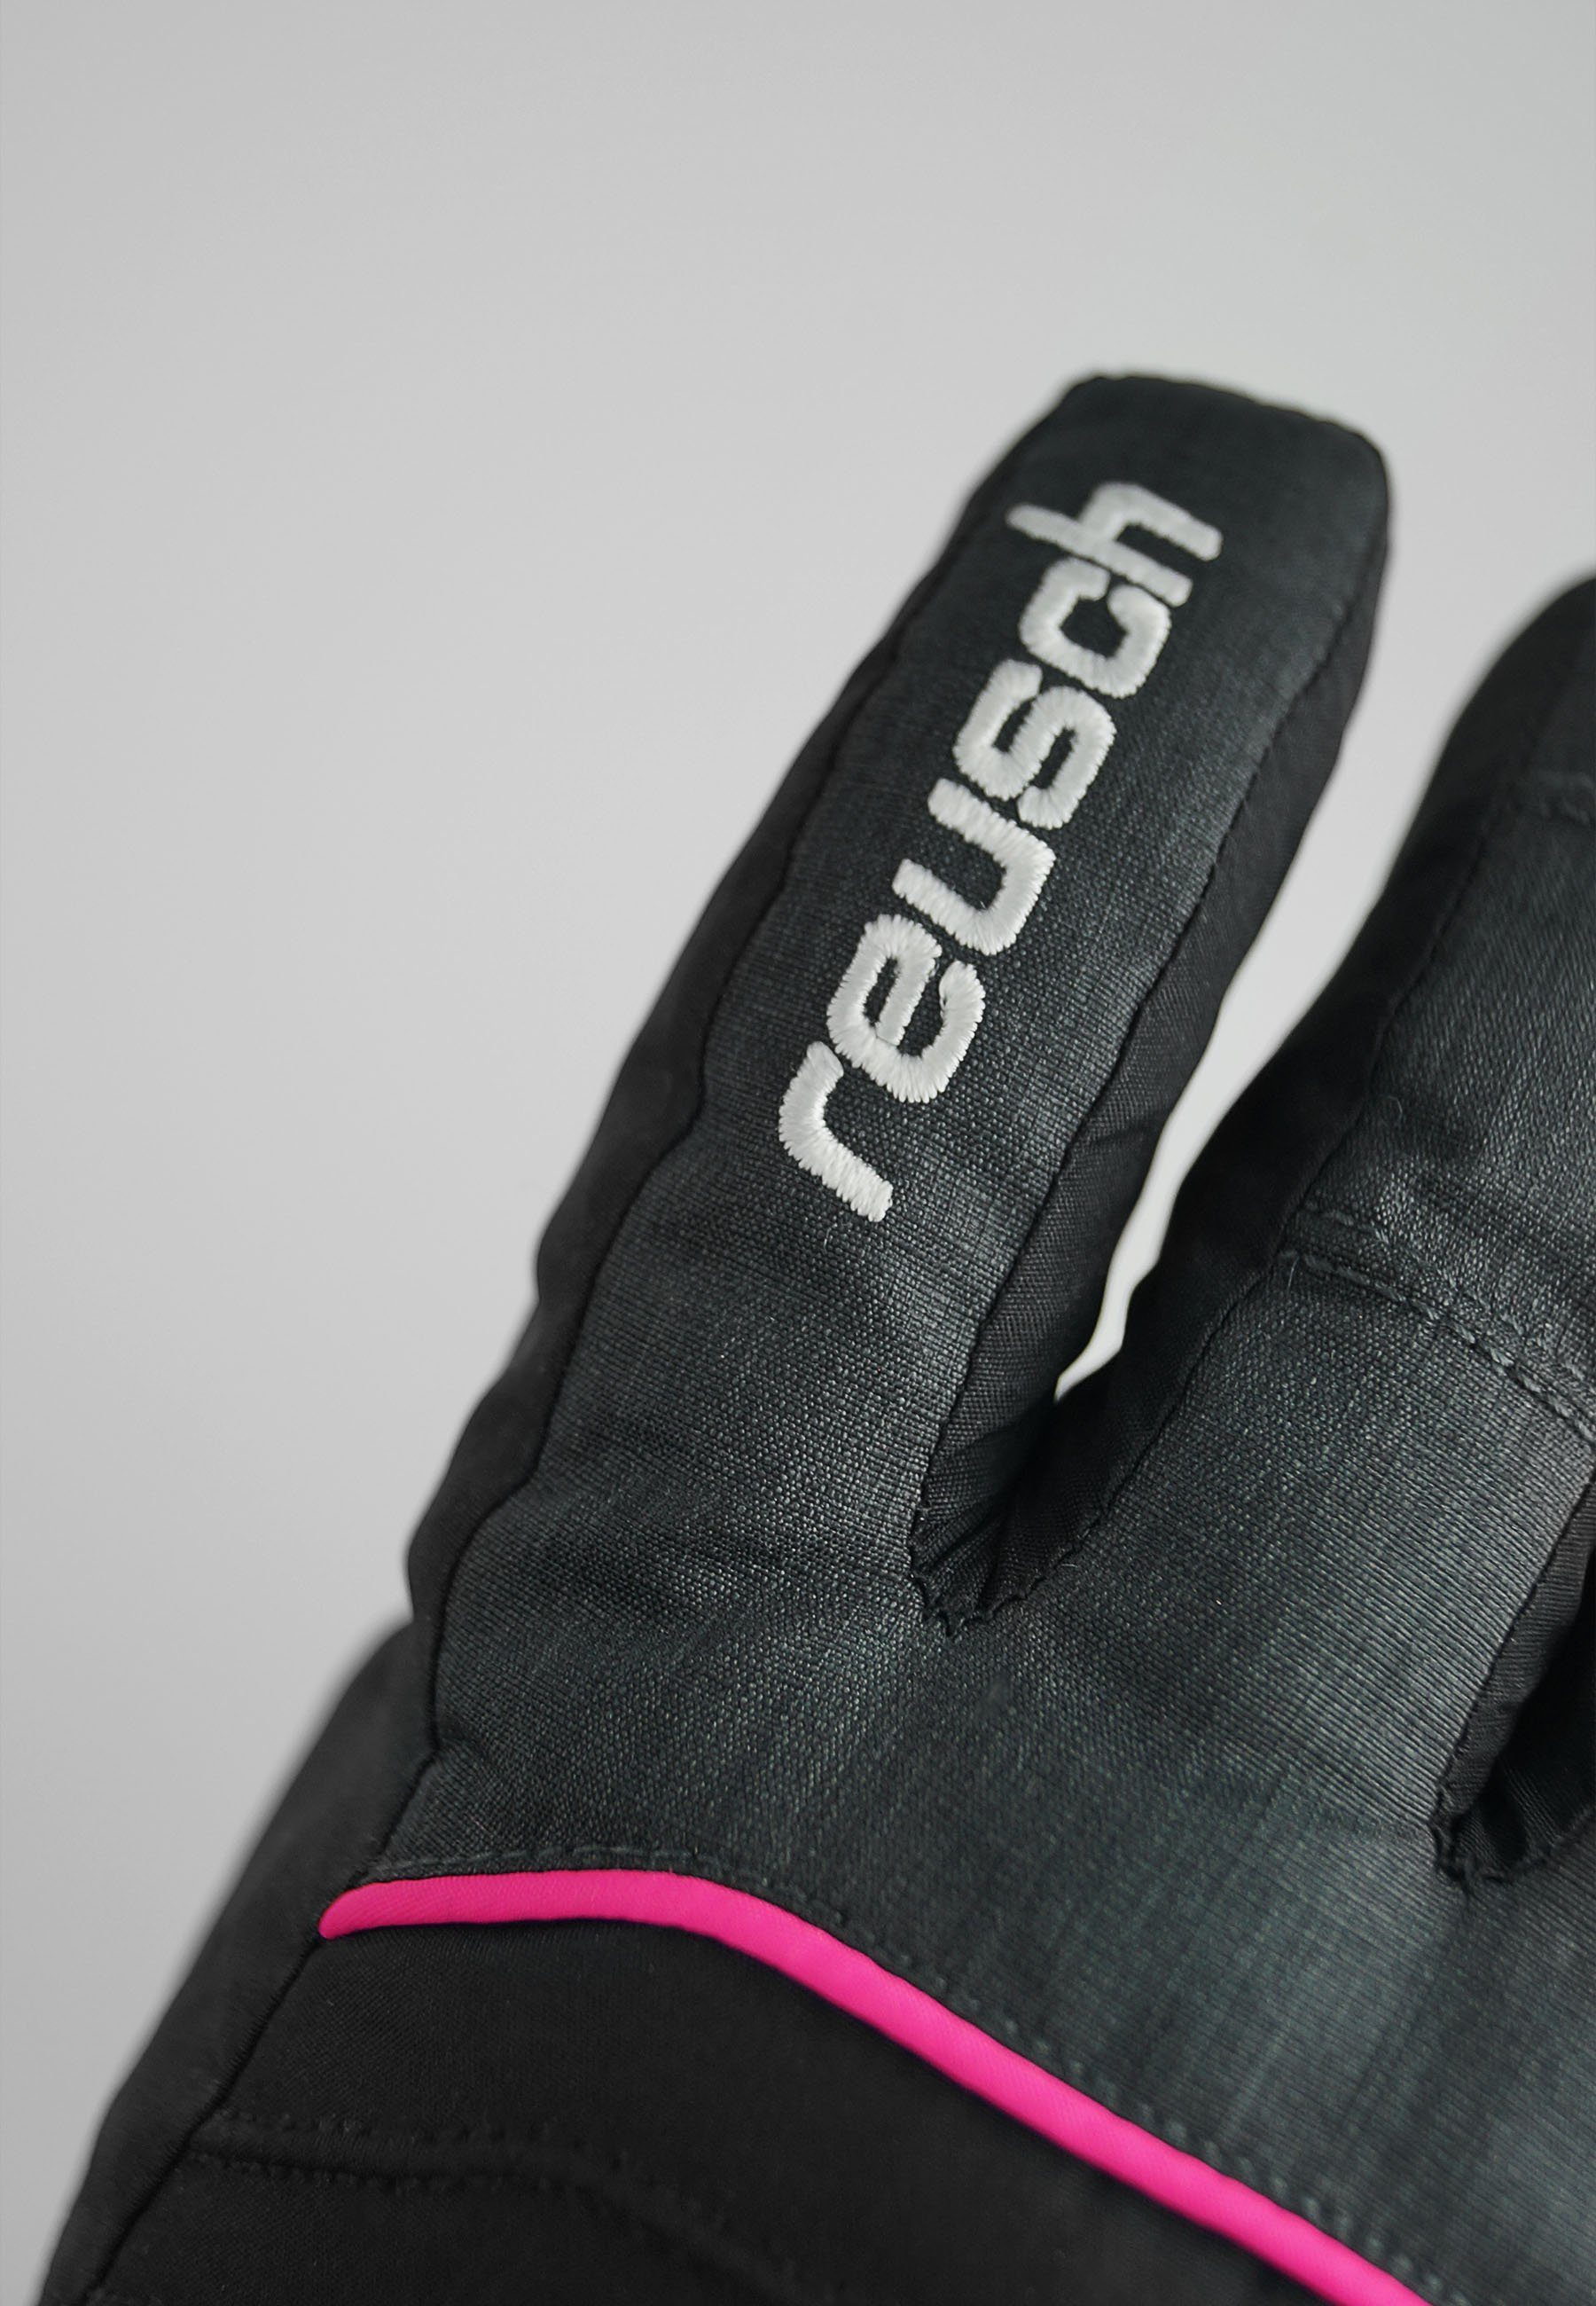 Reusch Skihandschuhe dunkelgrau-pink wasserdichter GORE-TEX Funktionsmembran mit Teddy